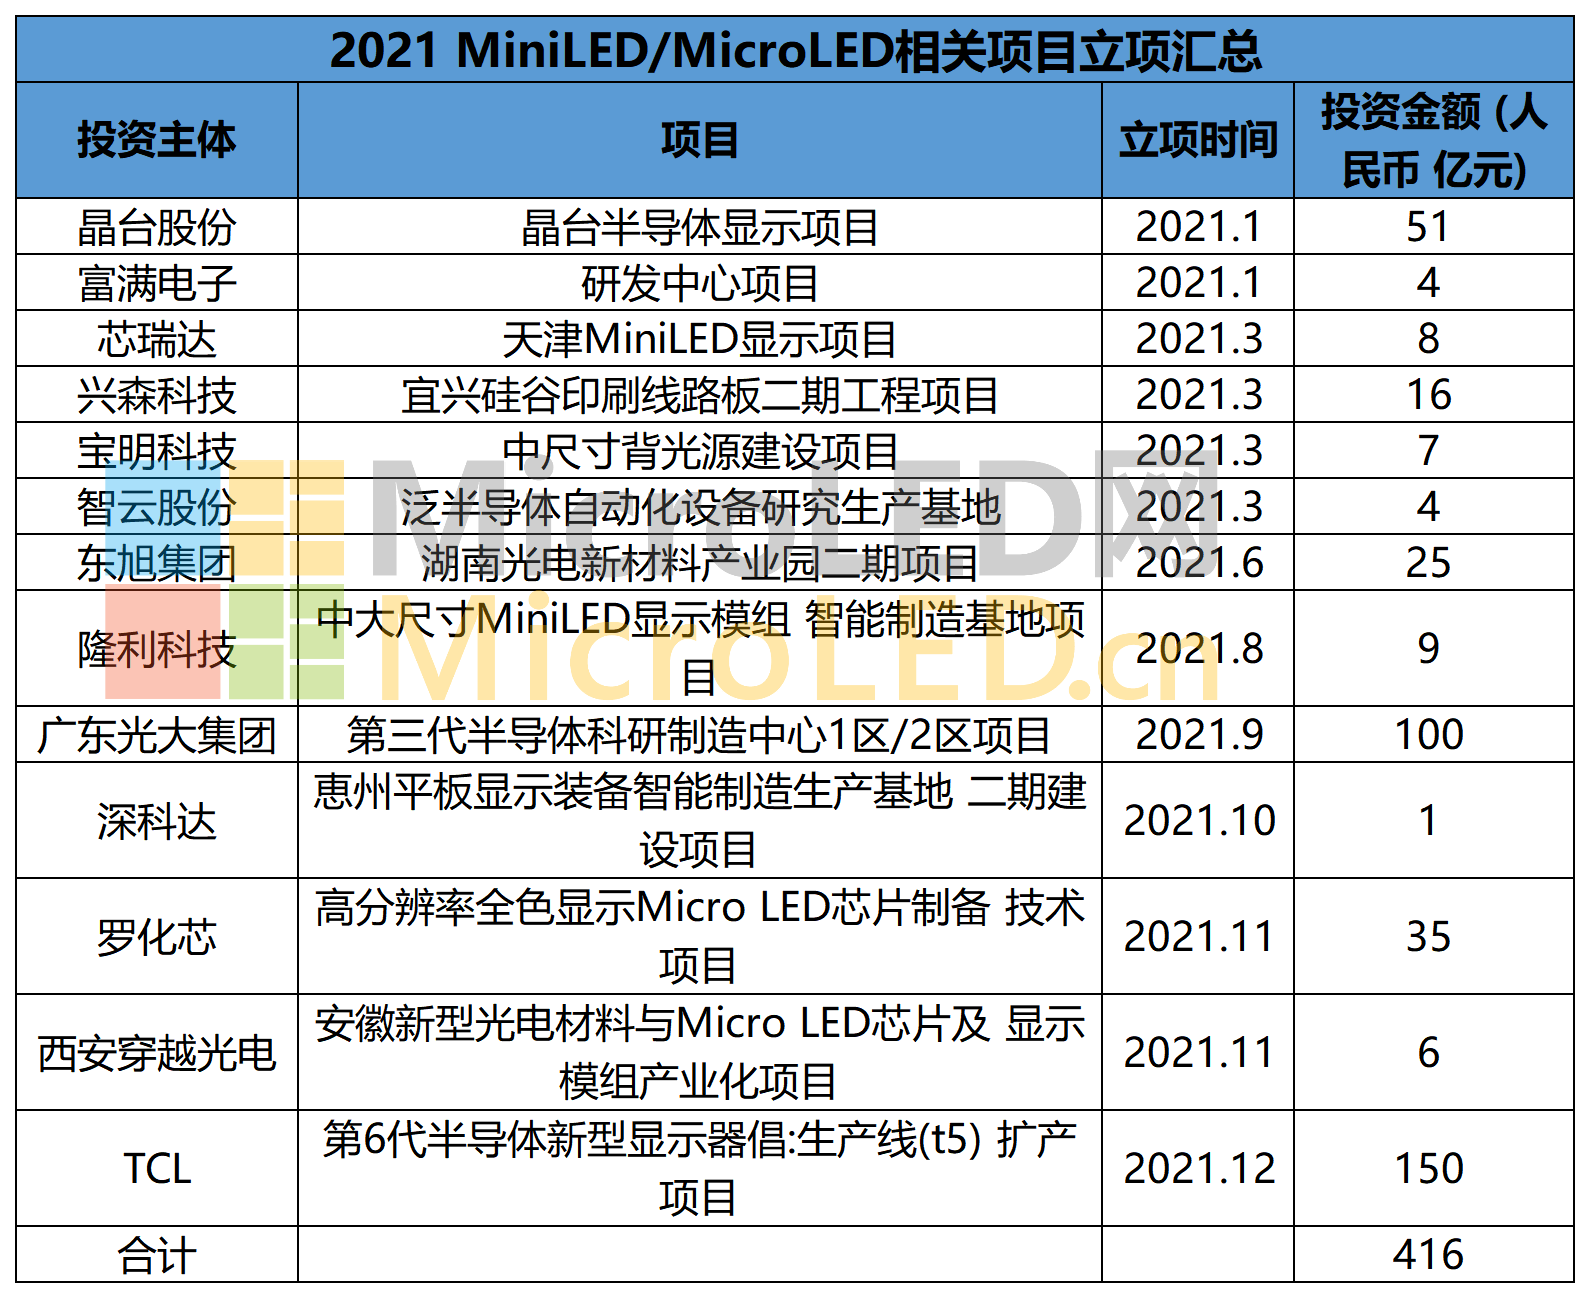 盘点2021-2022年MiniLED/MicroLED新建及投产项目